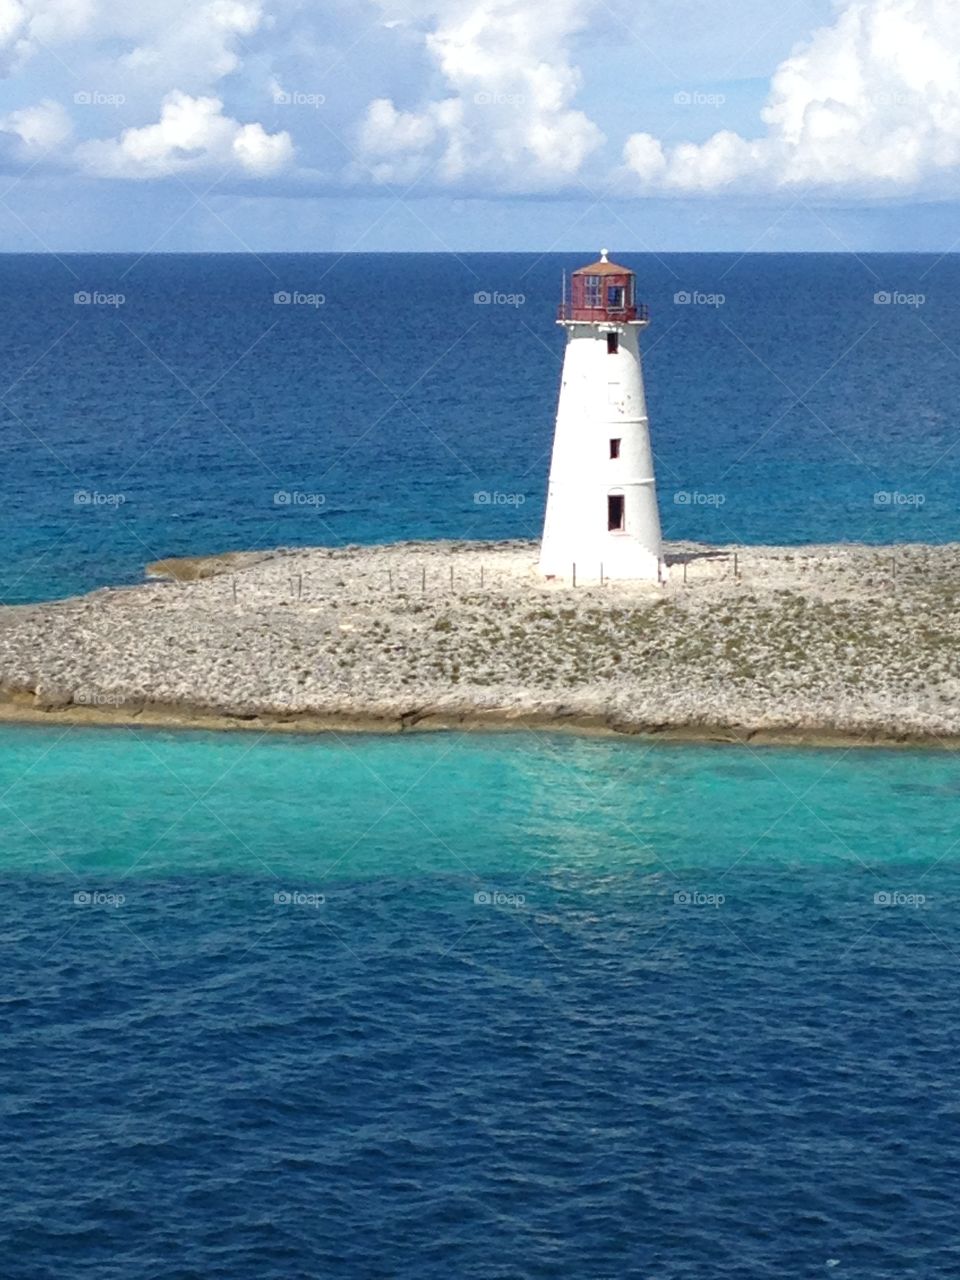 Abandoned Lighthouse on the coast. 